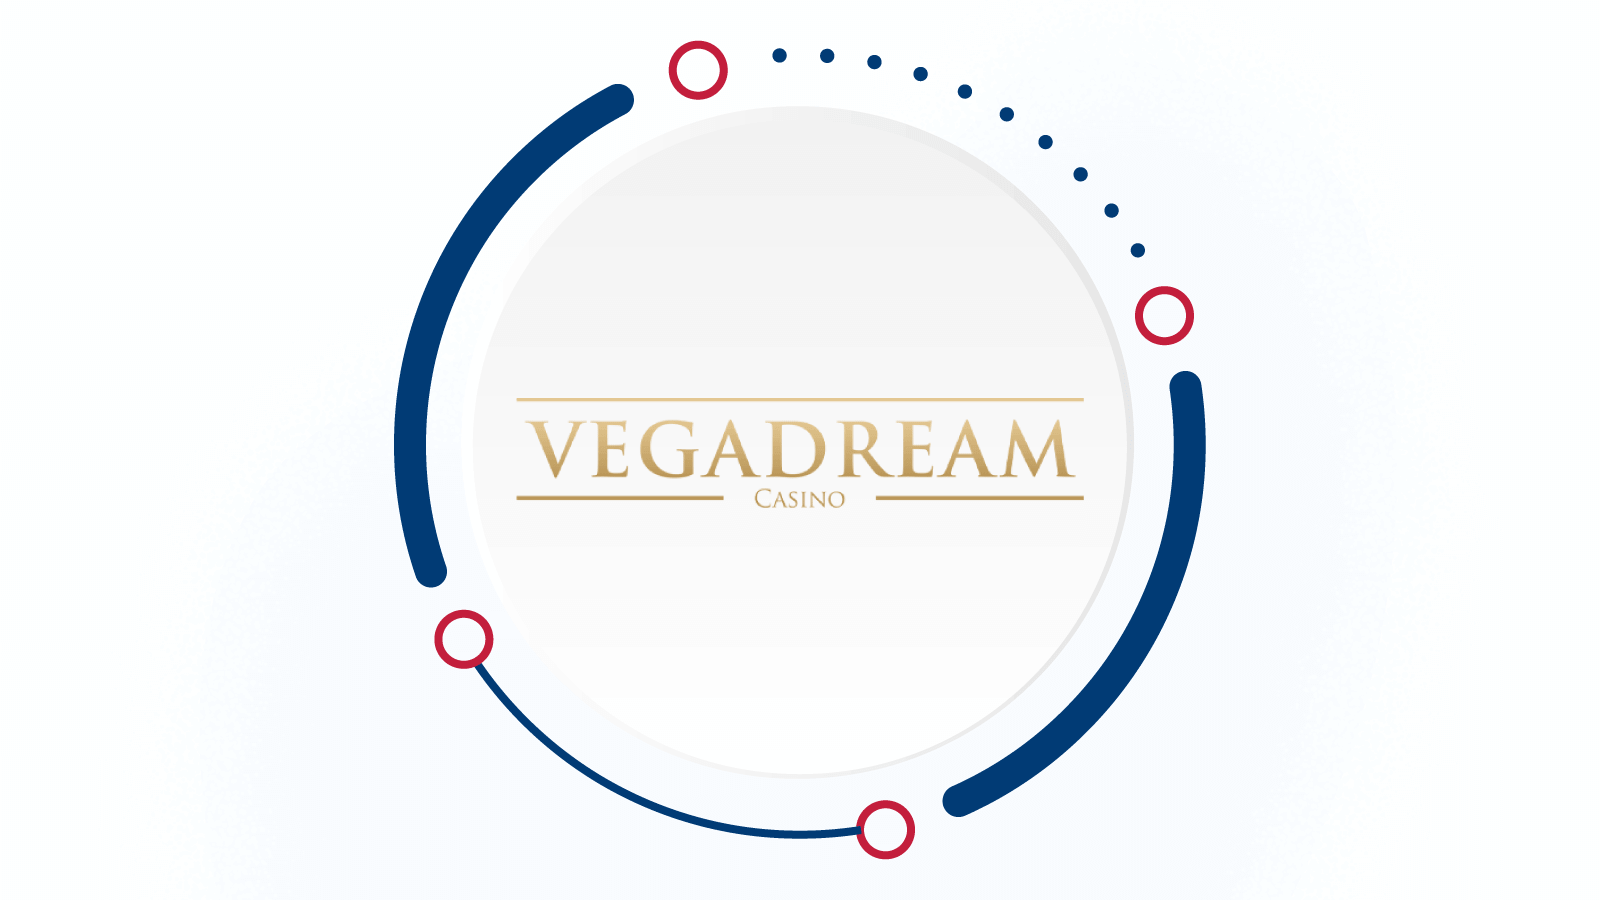 #1 New Roulette Casino – VegaDream Casino